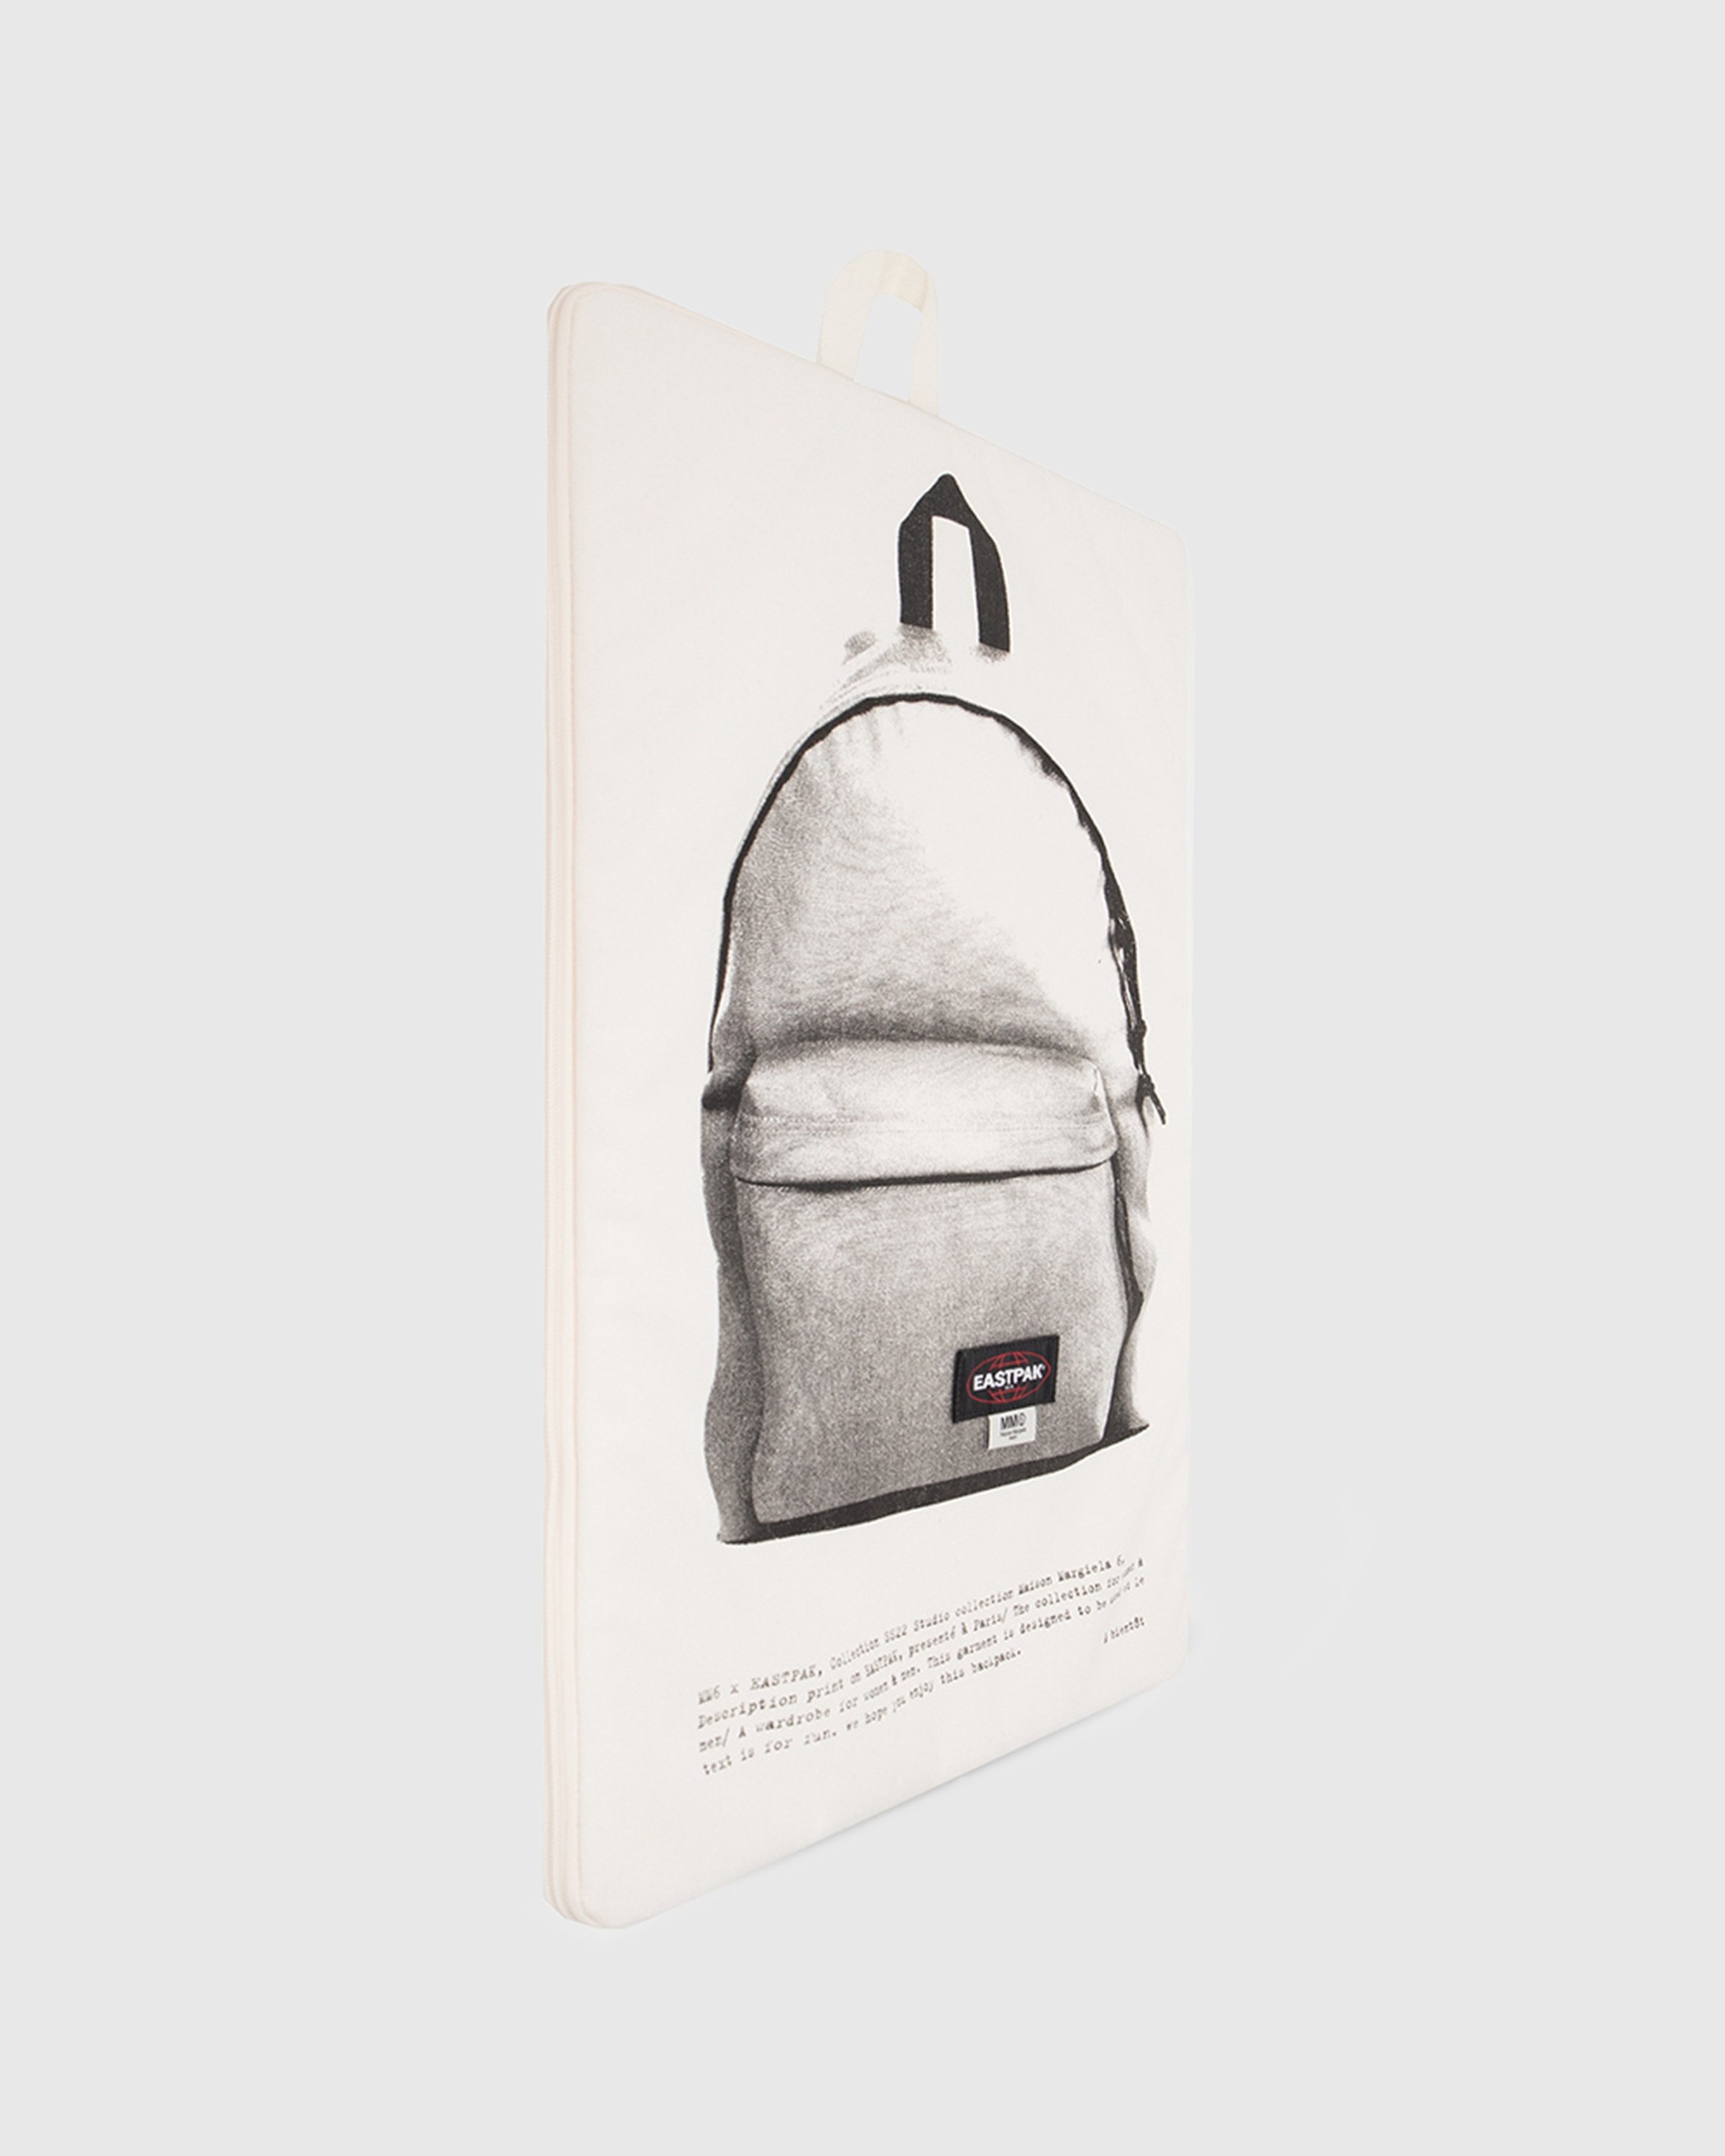 MM6 Maison Margiela x Eastpak – Zaino Backpack Whisper White - Bags - White - Image 2